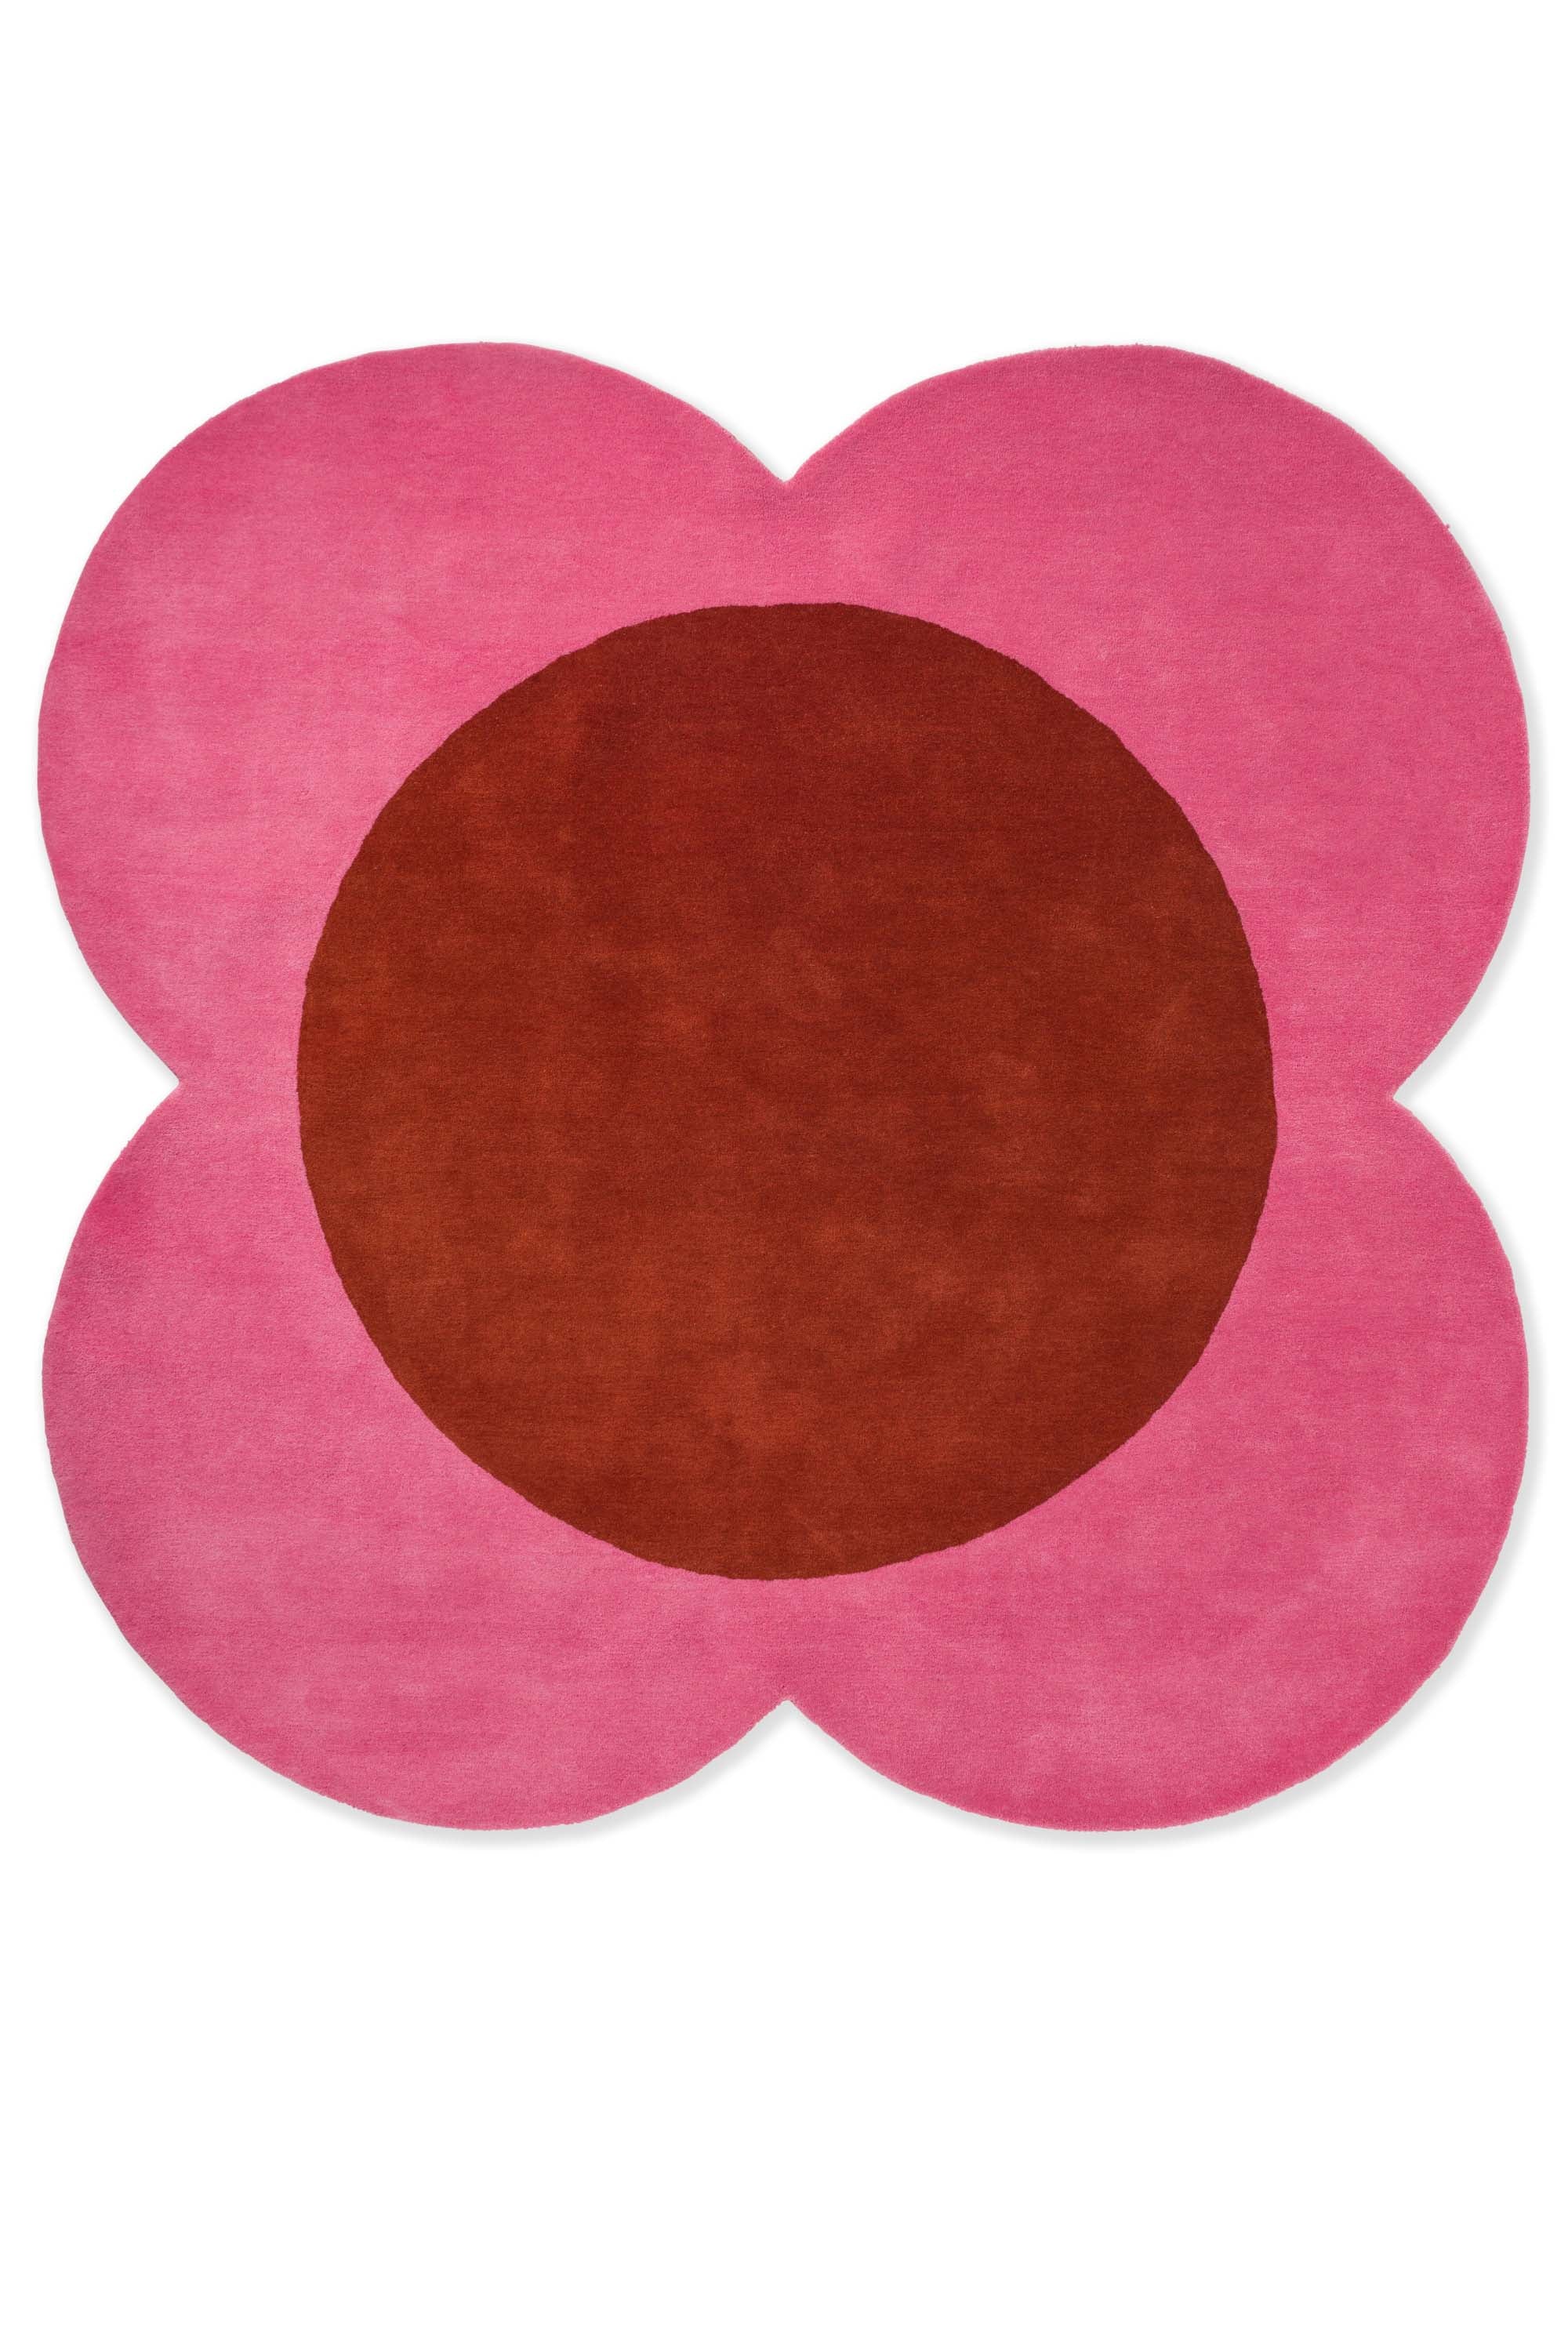 Pink flower shaped rug